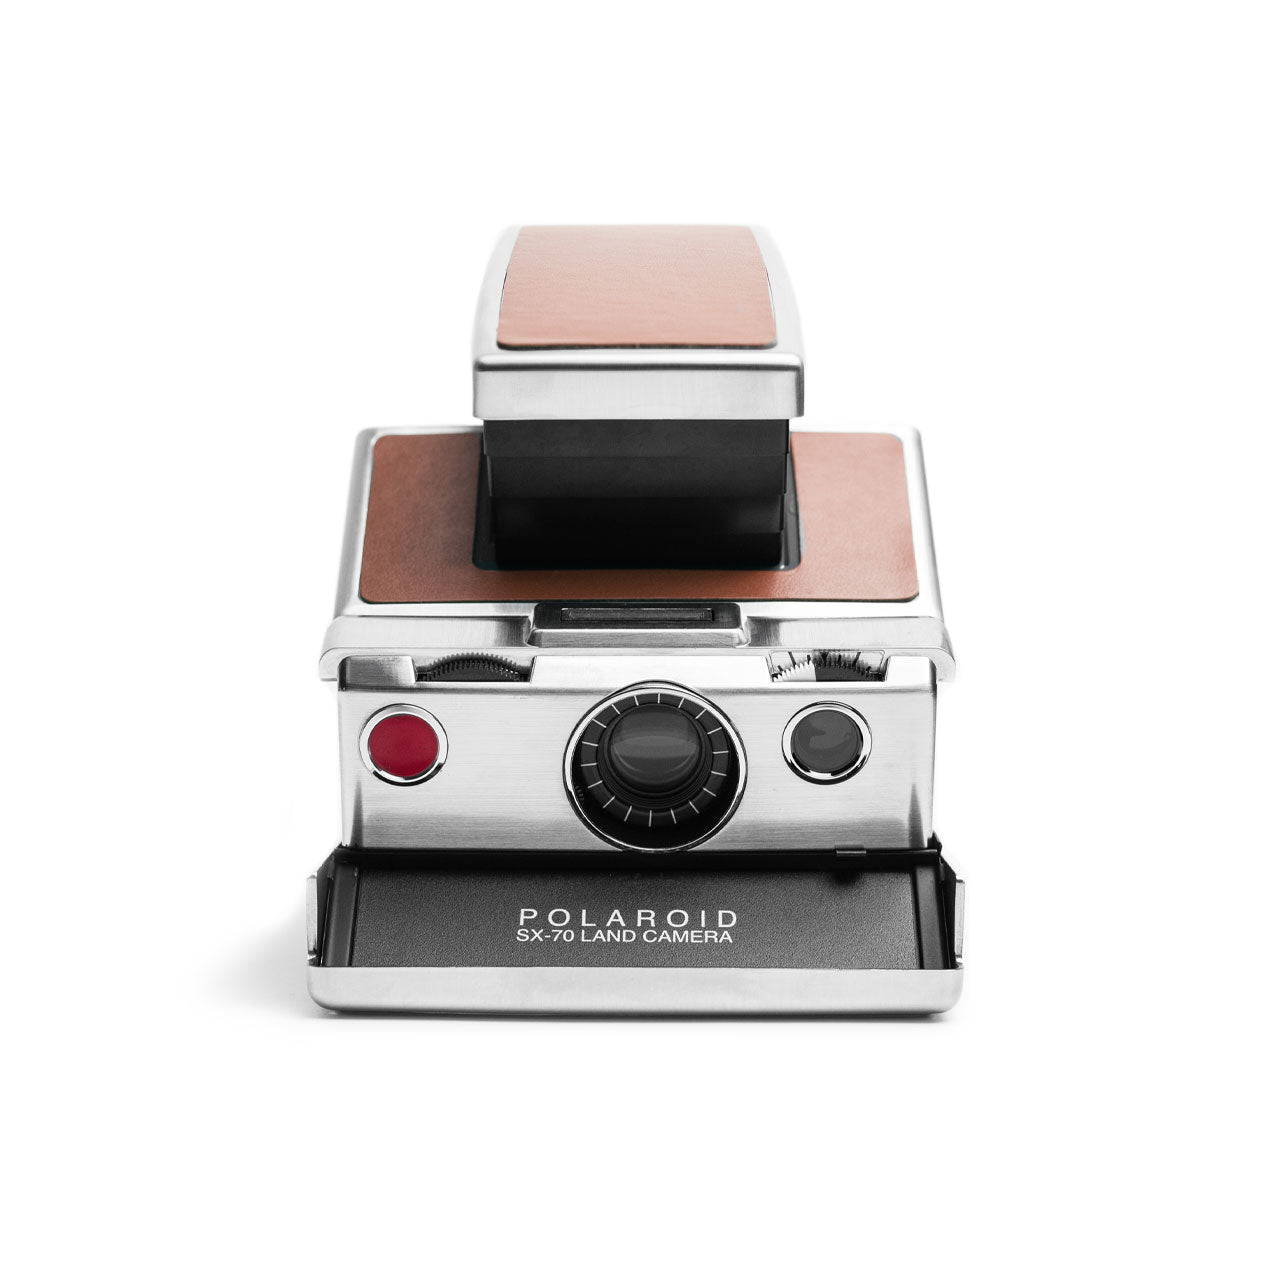 Polaroid SX-70 Camera